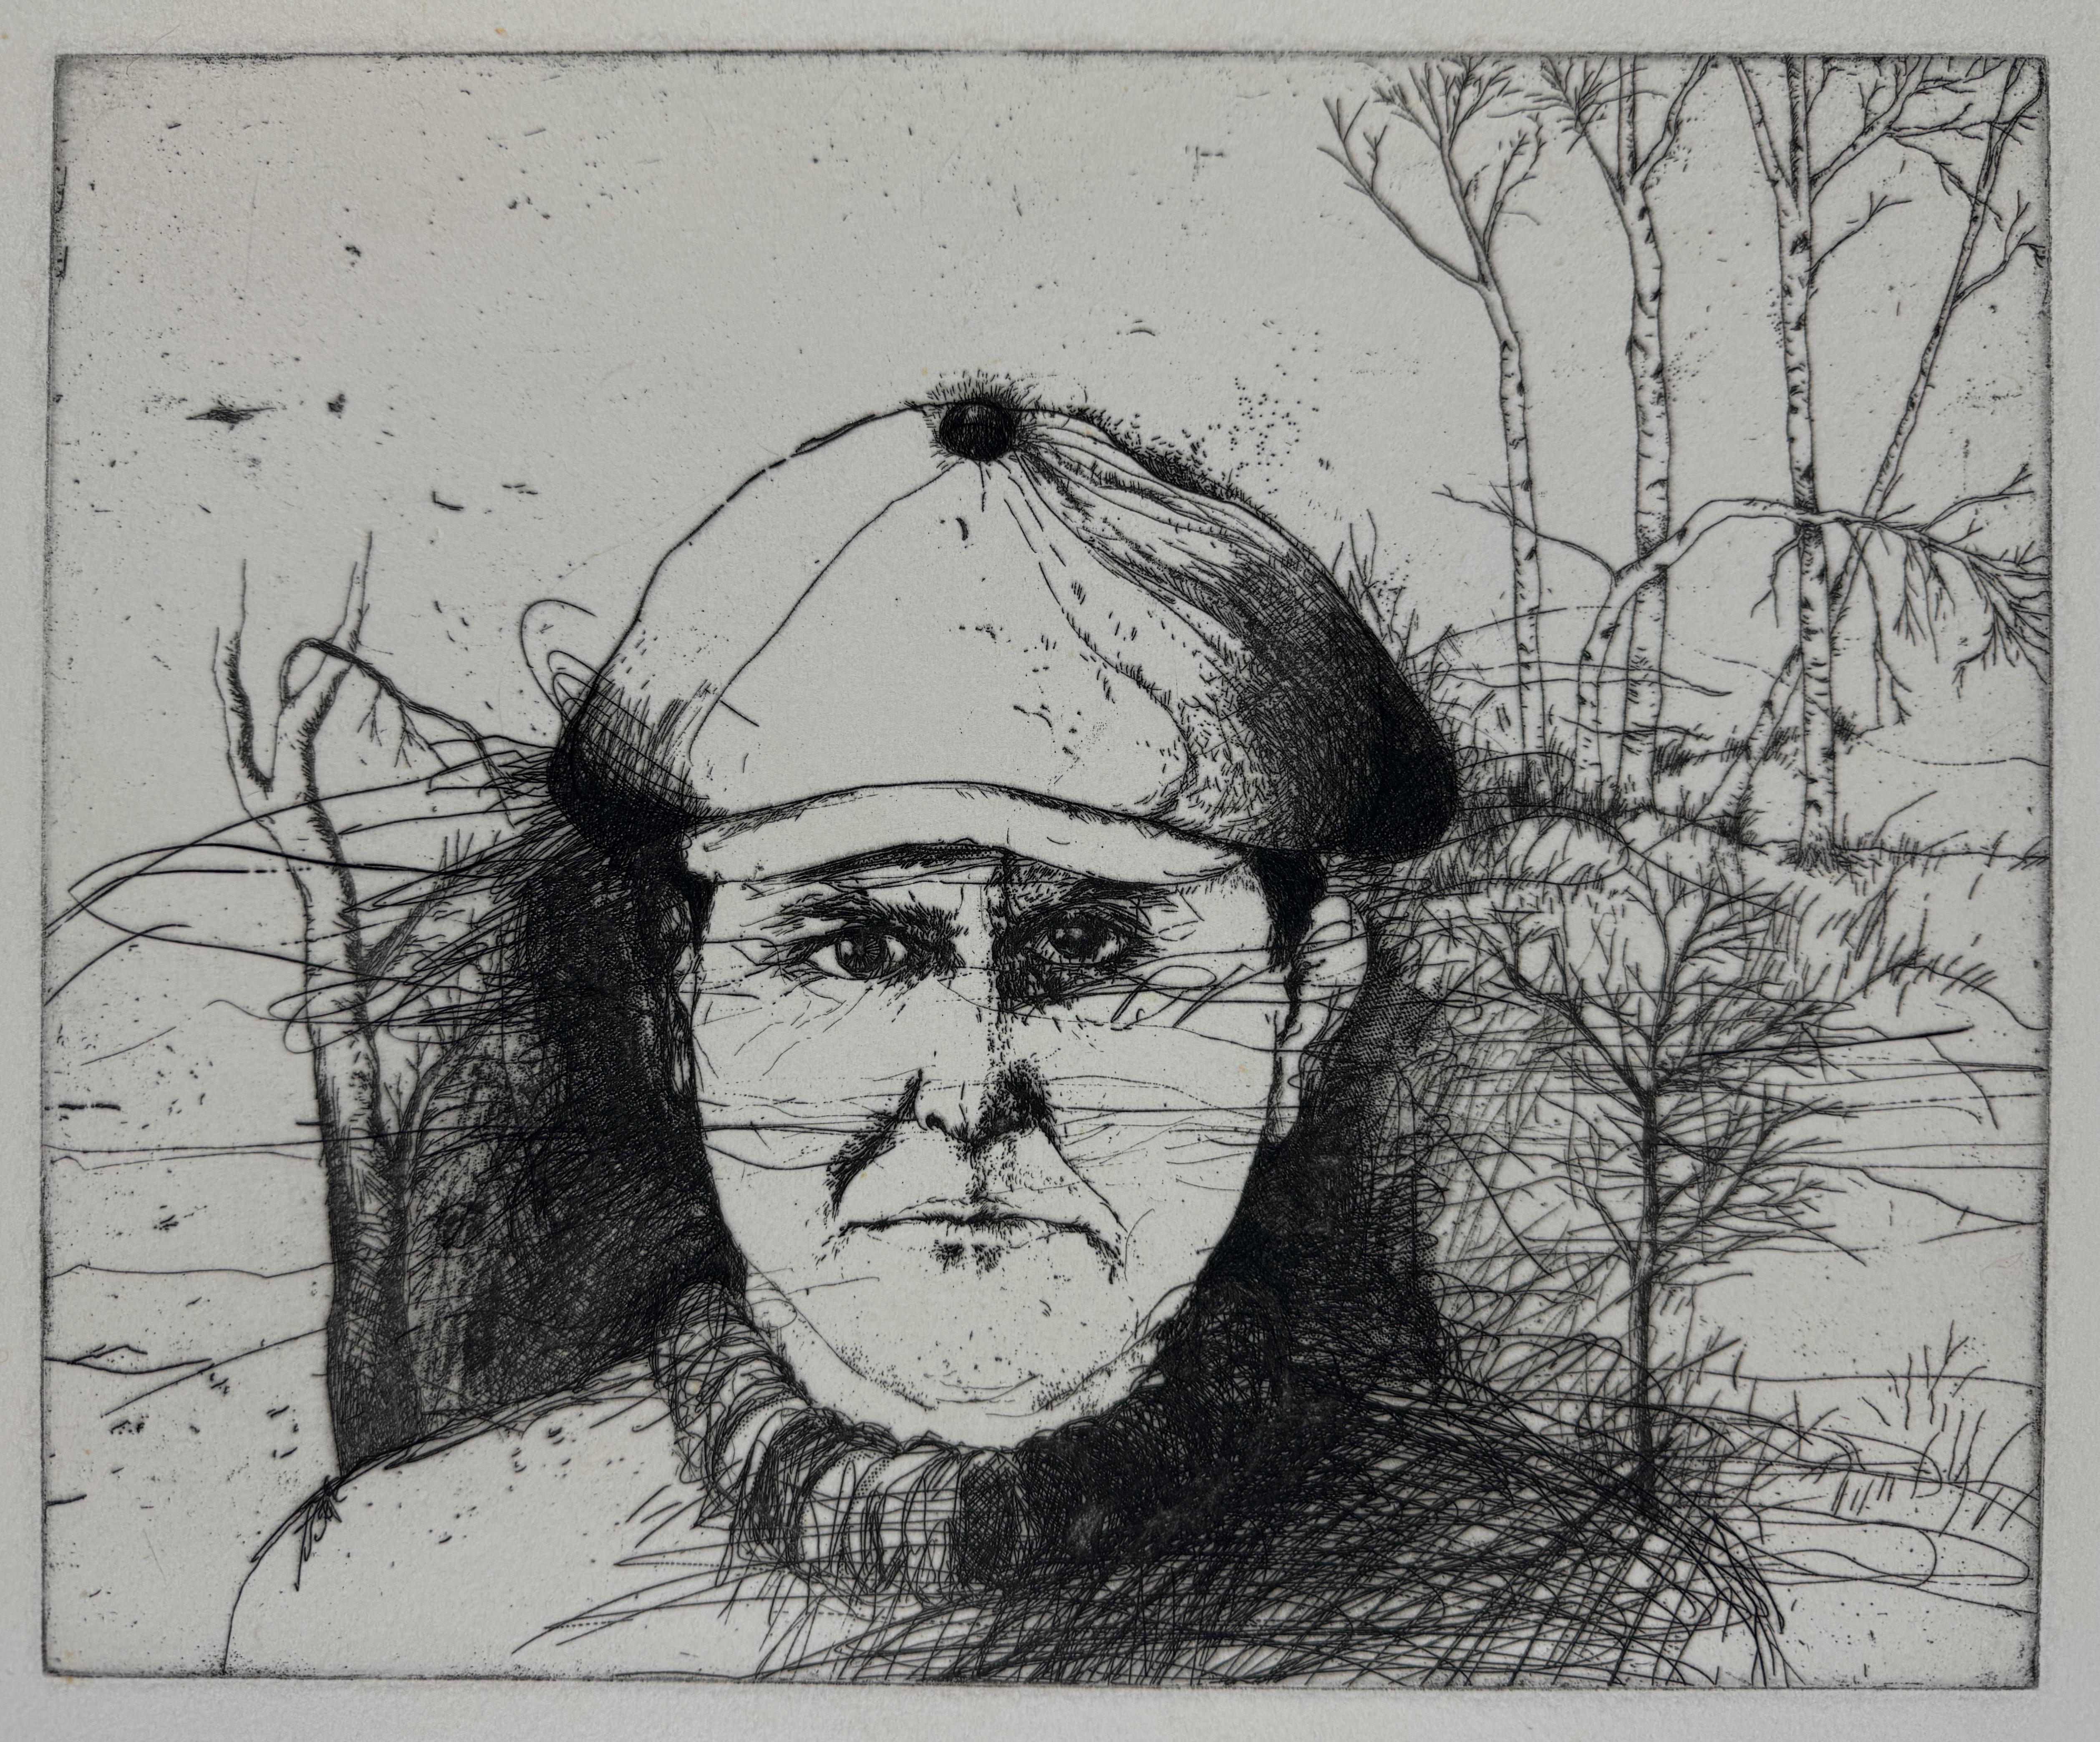 Jim Dine Portrait Print - Self Portrait in a Flat Cap (winter) first state 